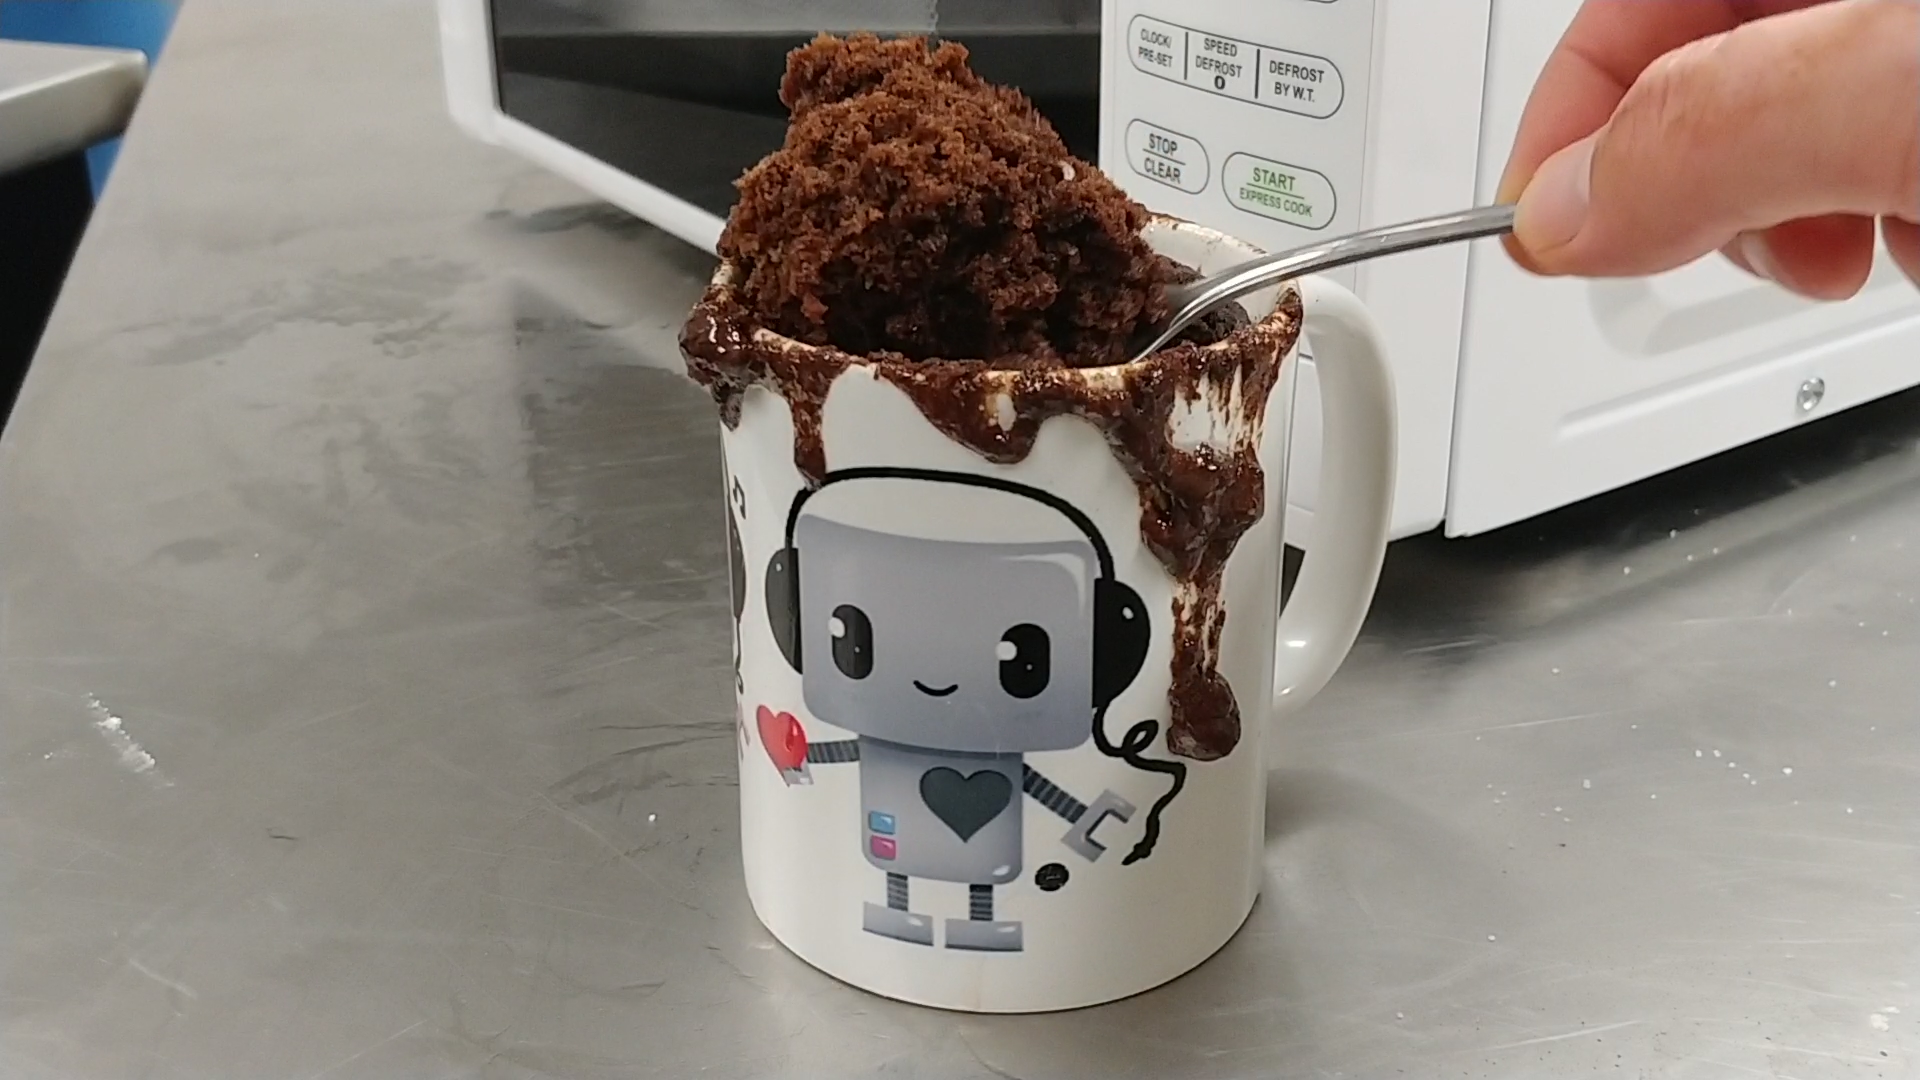 microwaved cake in a mug